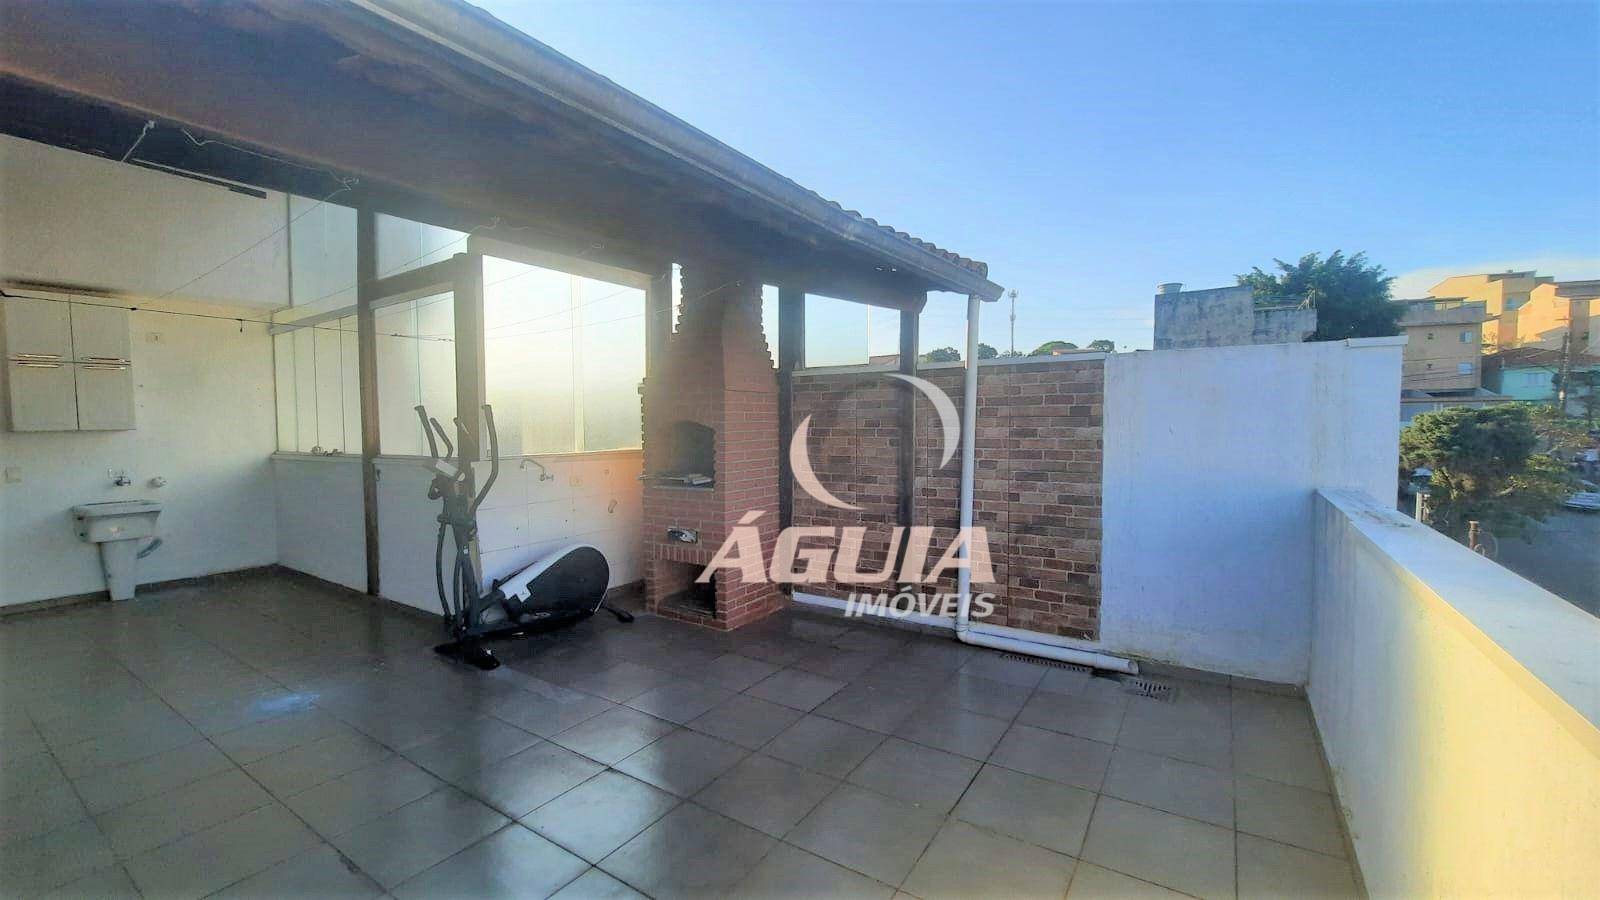 Cobertura com 02 dormitórios à venda, 49 m² + 49 m² por R$ 340.500 - Vila Junqueira - Santo André/SP